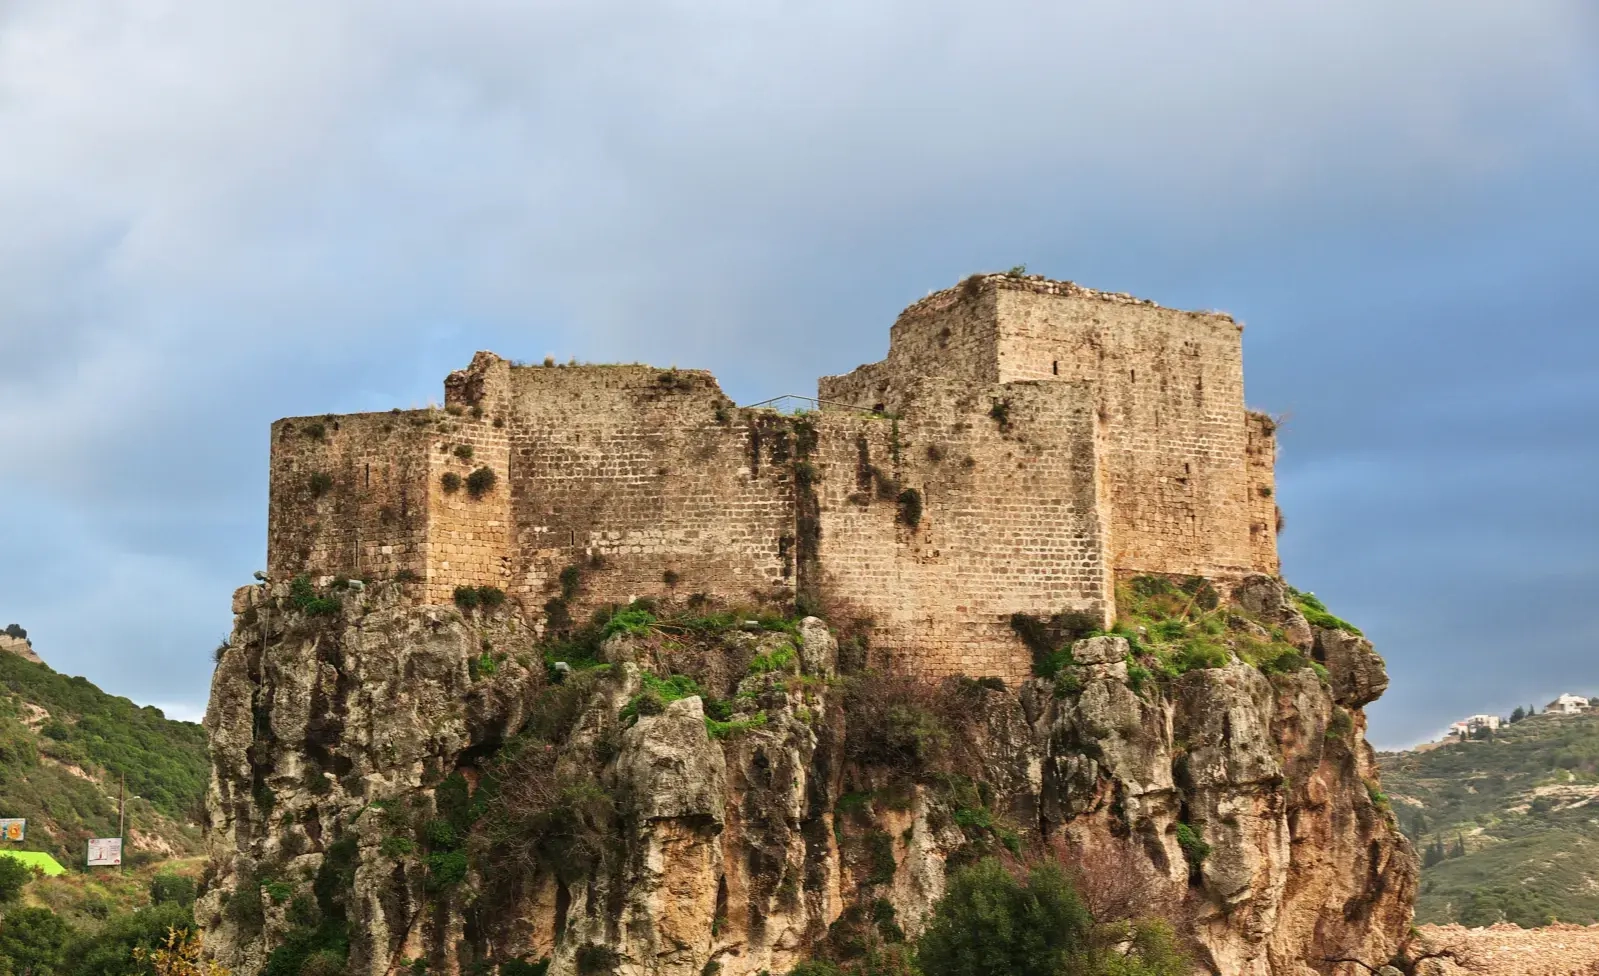 The Crusader Citadel of Mousaylaha